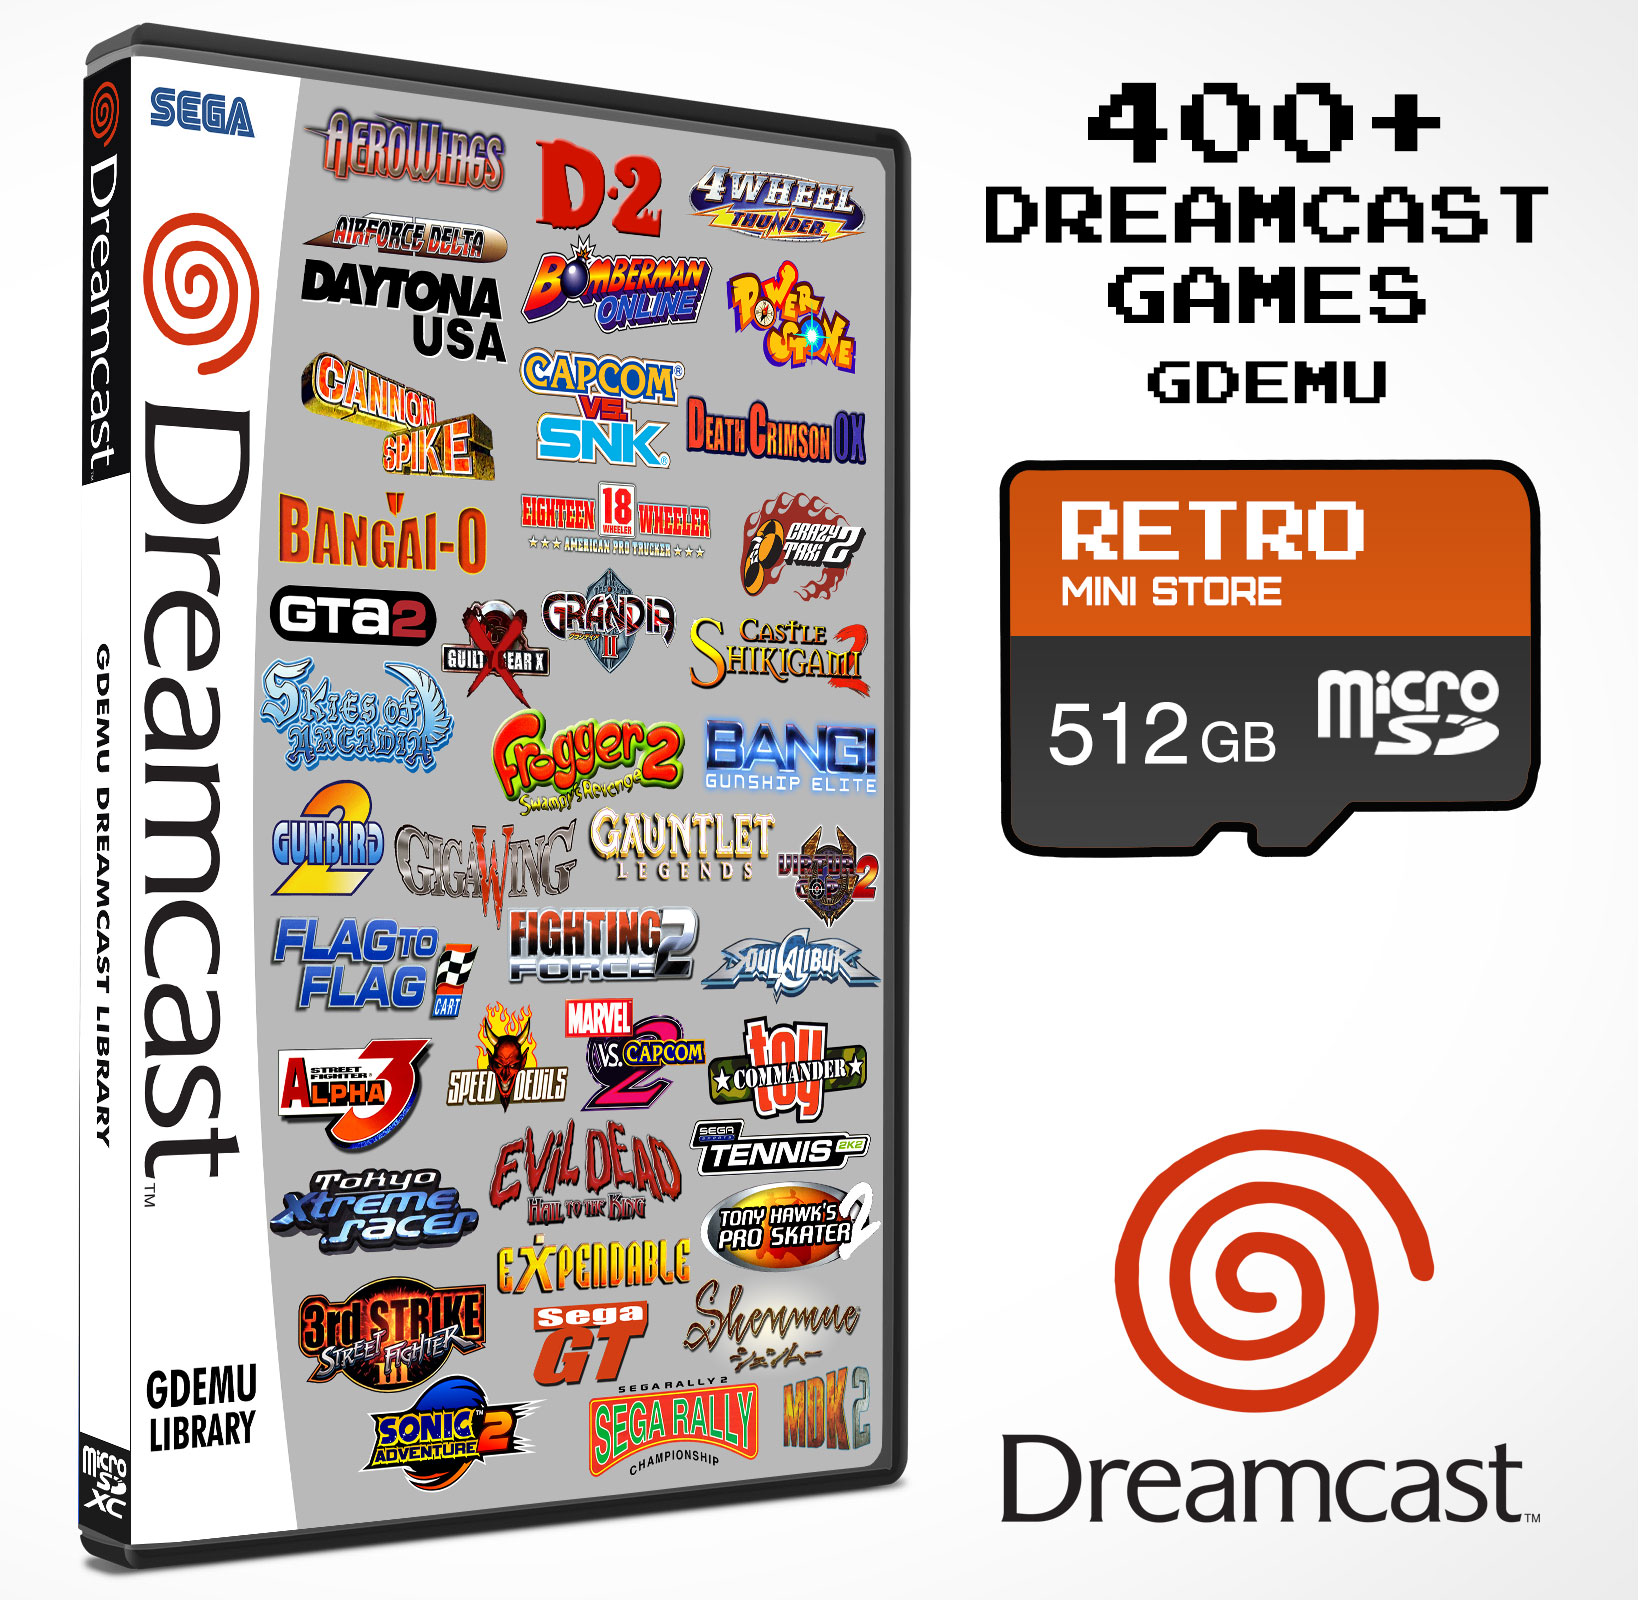 GDEMU 512GB Dreamcast Library